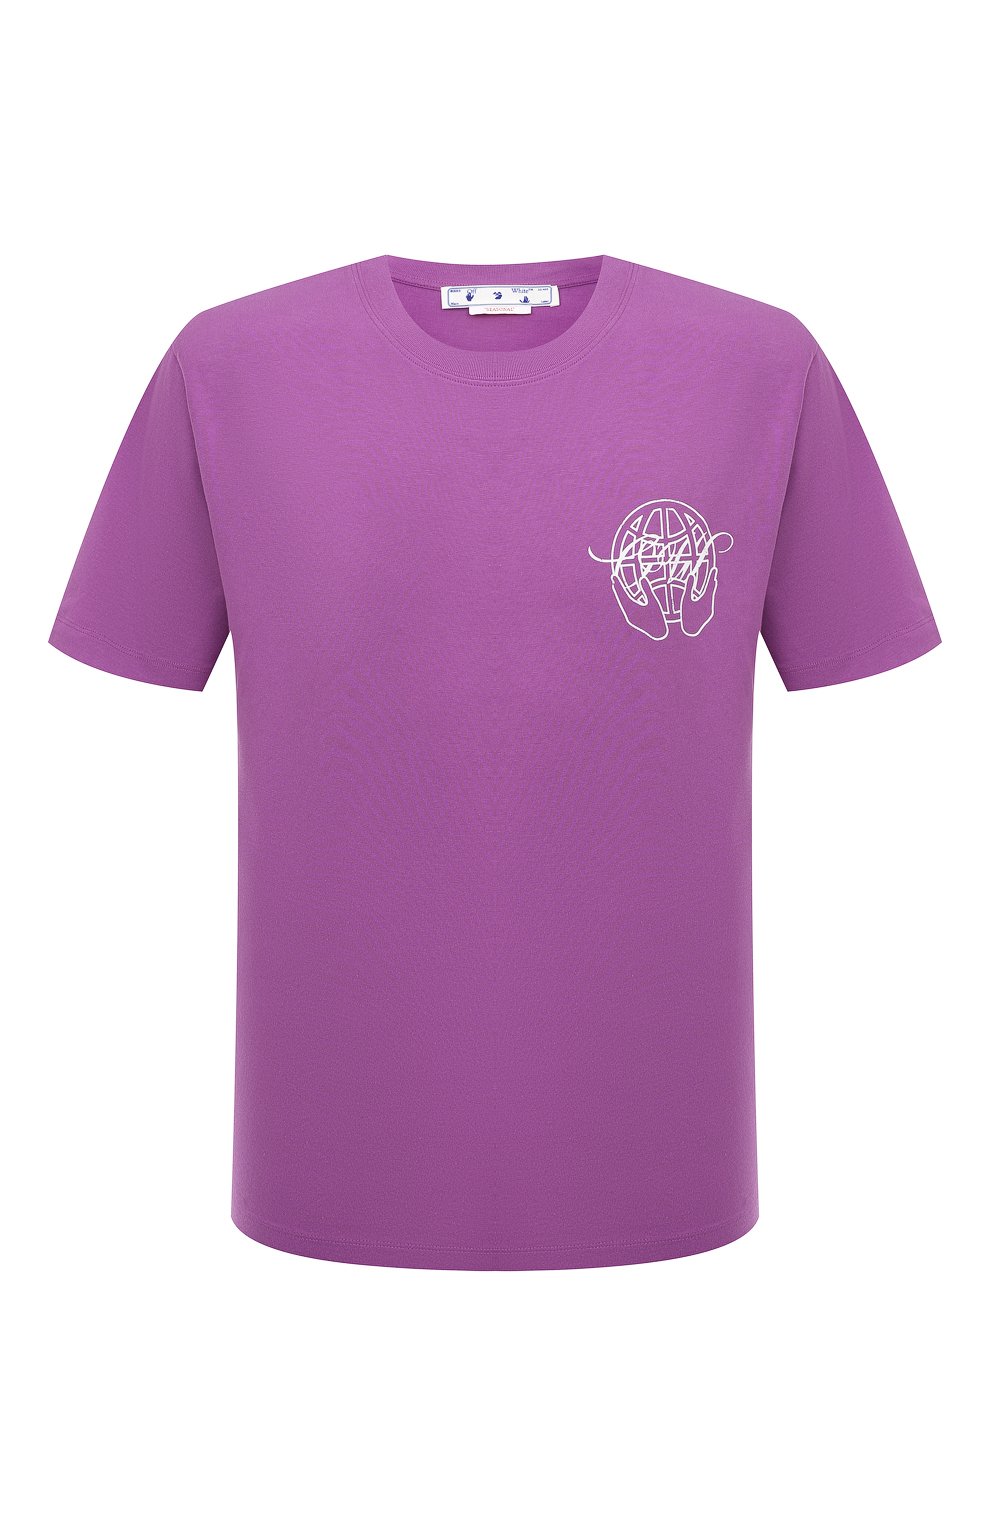 Футболки Off-White, Хлопковая футболка Off-White, Португалия, Фиолетовый, Хлопок: 100%;, 13372232  - купить